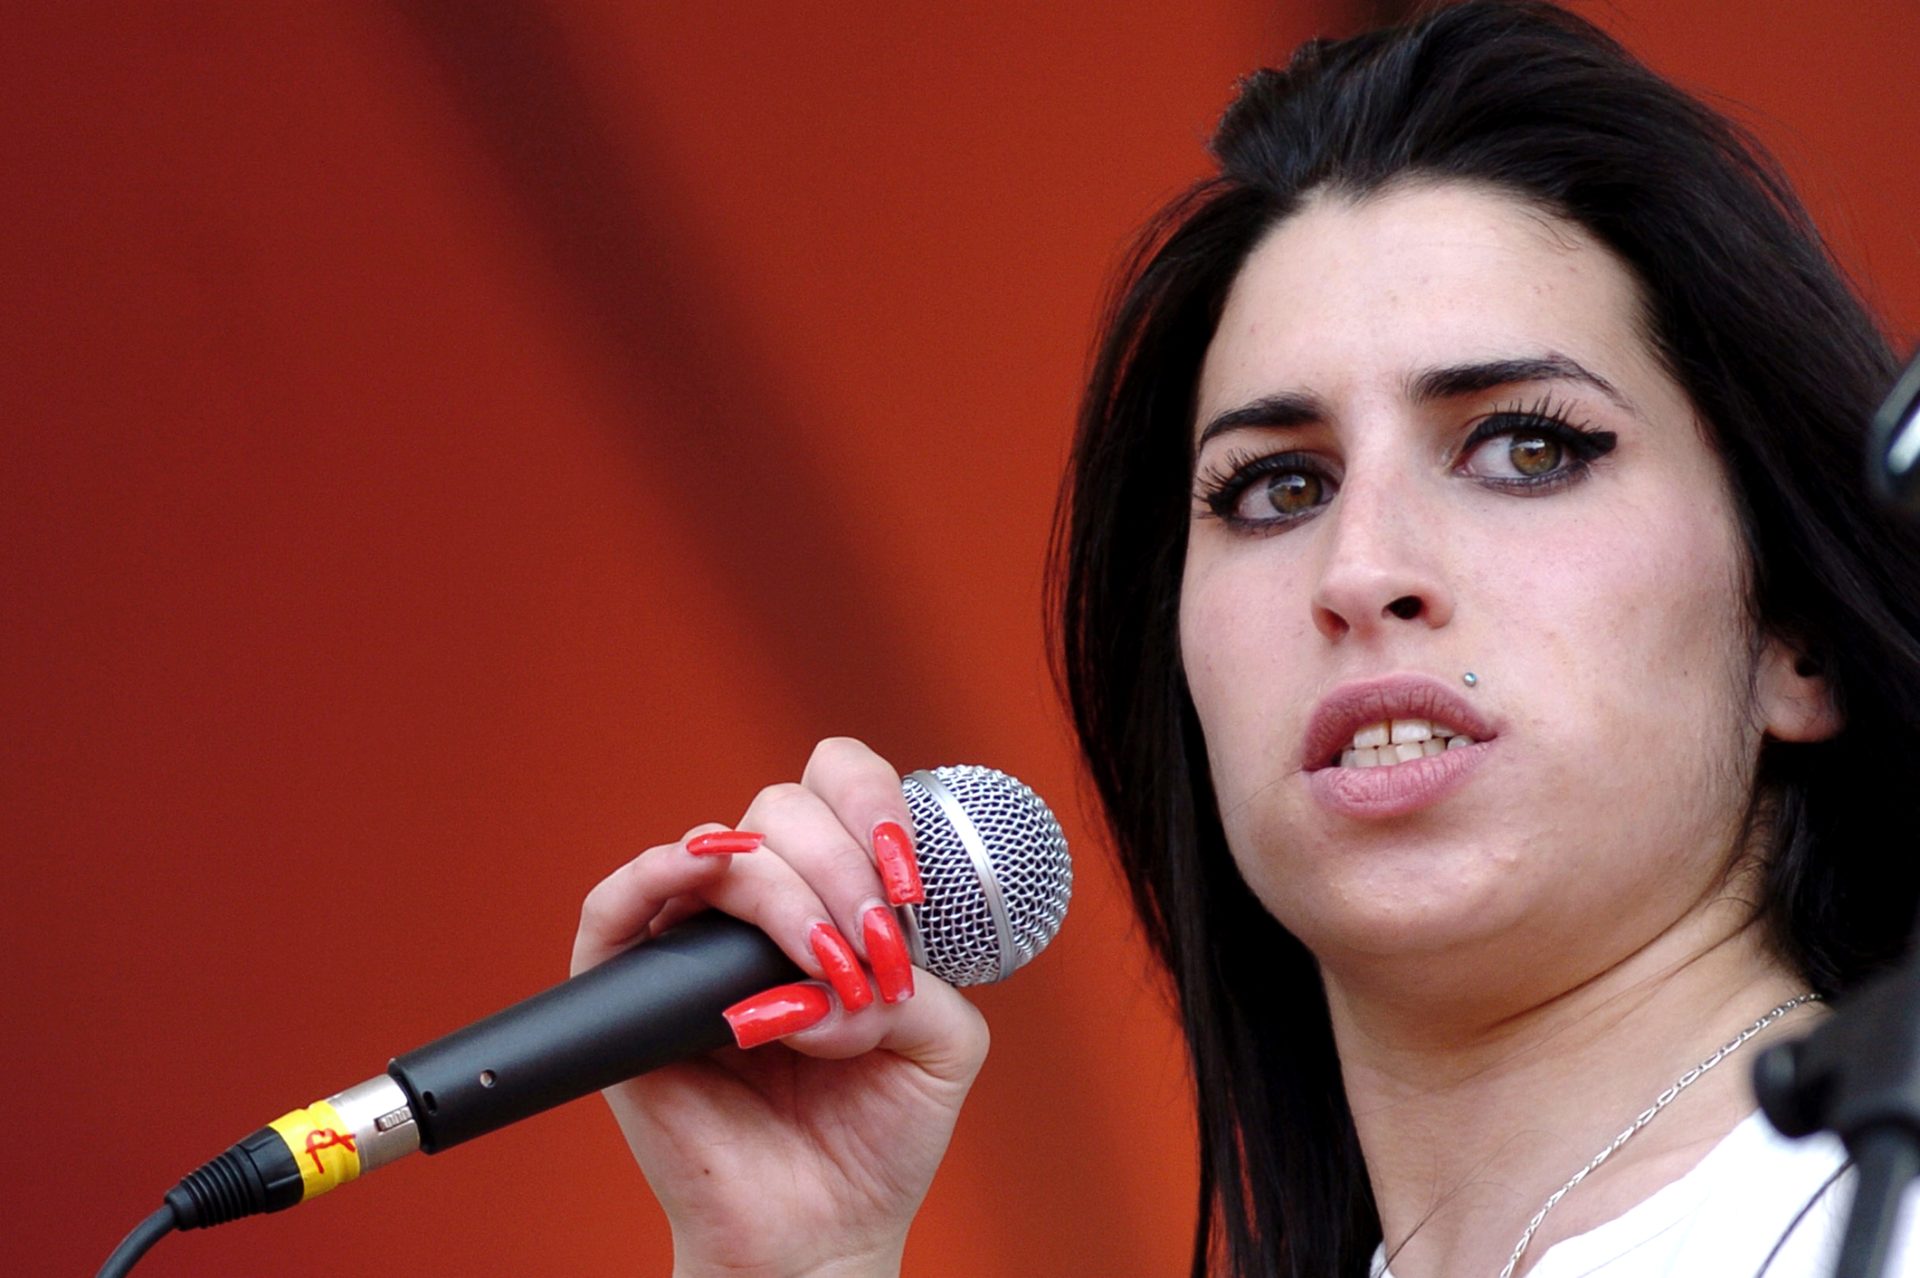 &#8220;Sei que ela estaria sóbria&#8221;. Melhor amigo de Amy Winehouse diz que cantora teria largado a música e o vício se estivesse viva